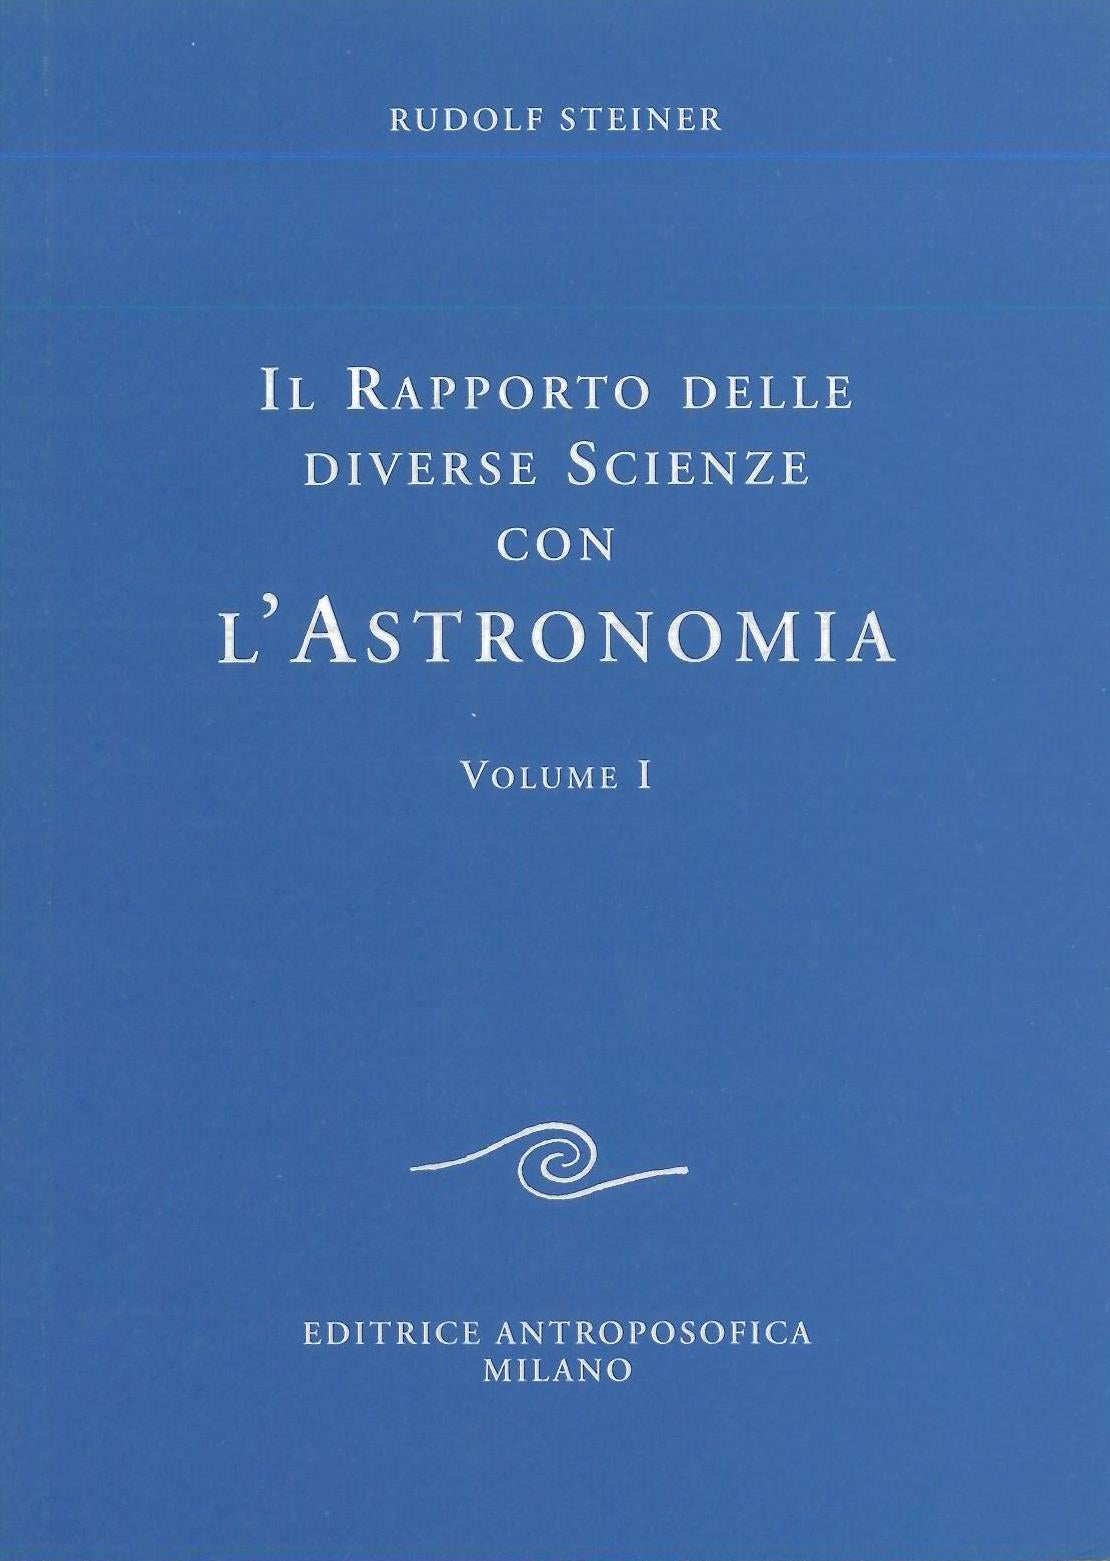 Il rapporto delle diverse scienze con l'Astronomia vol. 1 - Rudolf Steiner